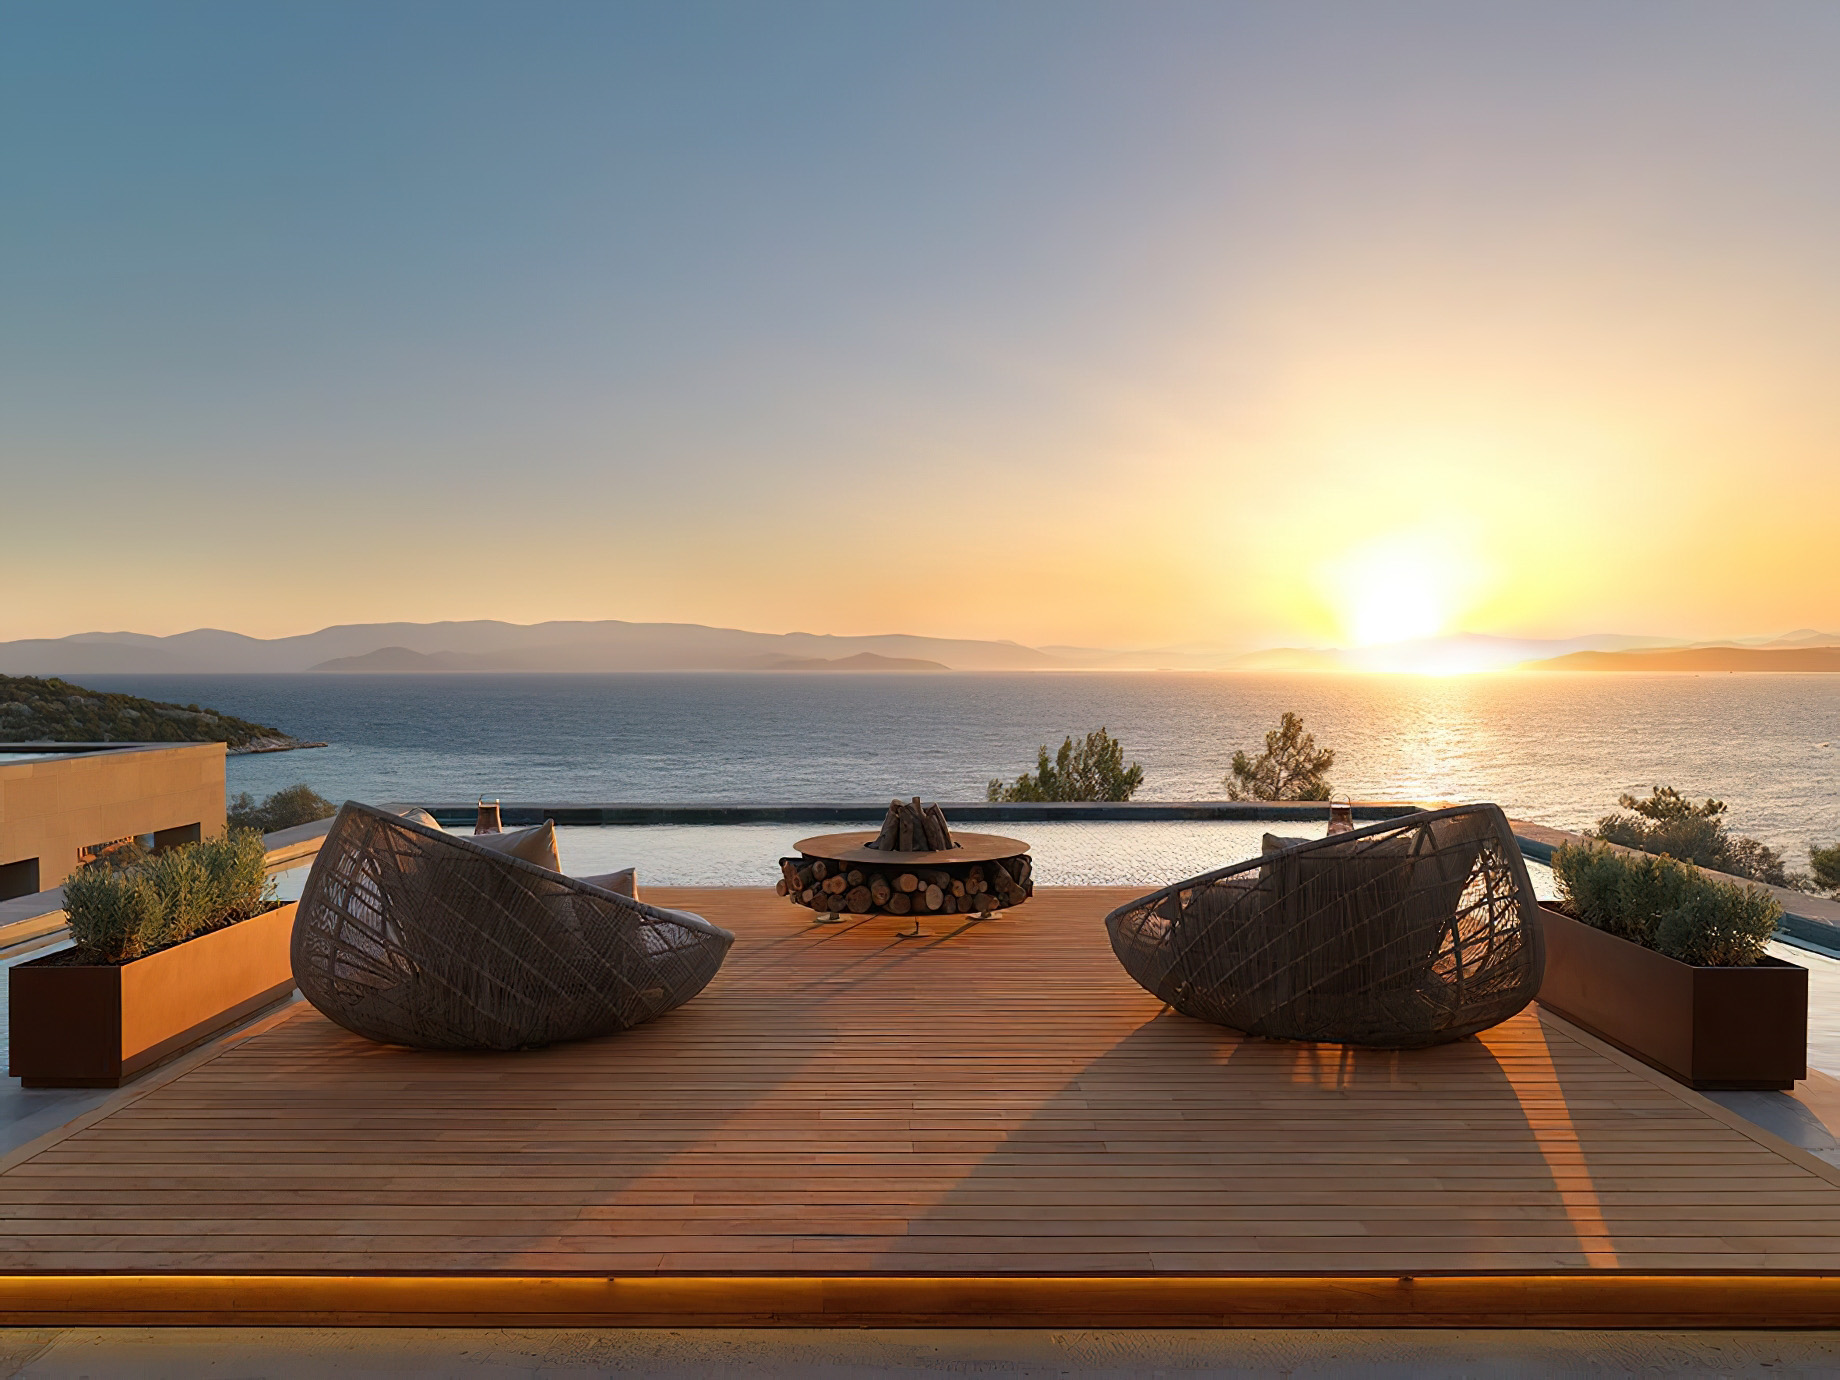 Mandarin Oriental, Bodrum Hotel – Bodrum, Turkey – Arrival Deck Sunset